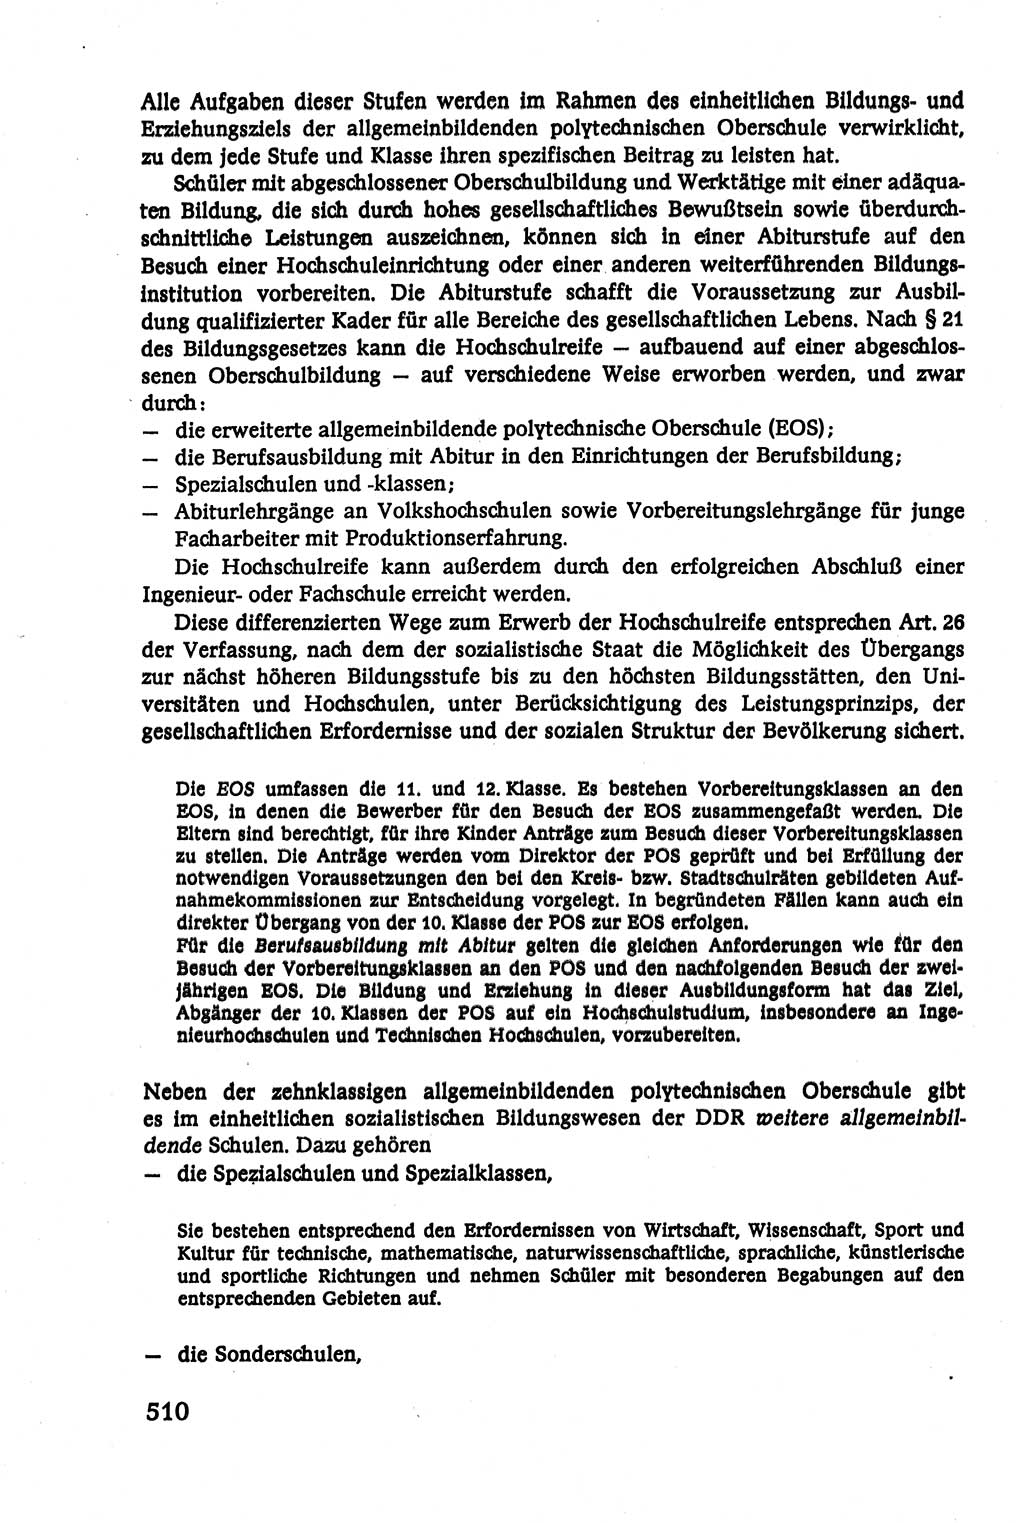 Verwaltungsrecht [Deutsche Demokratische Republik (DDR)], Lehrbuch 1979, Seite 510 (Verw.-R. DDR Lb. 1979, S. 510)